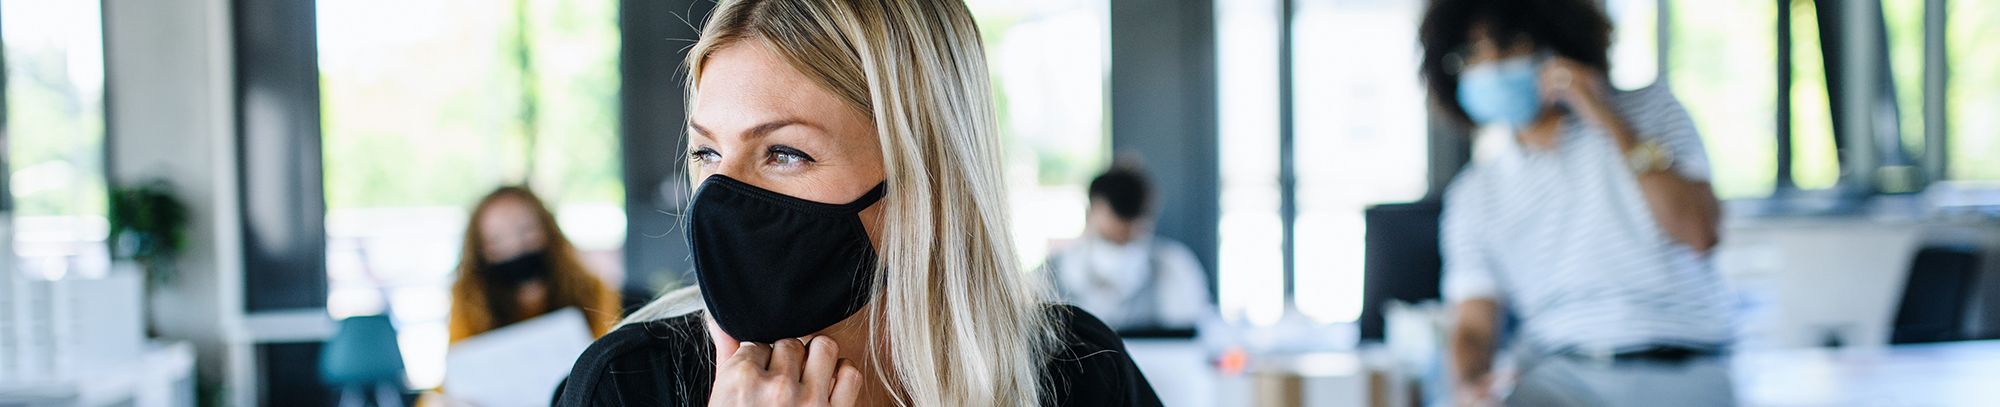 Woman wearing mask in open plan office